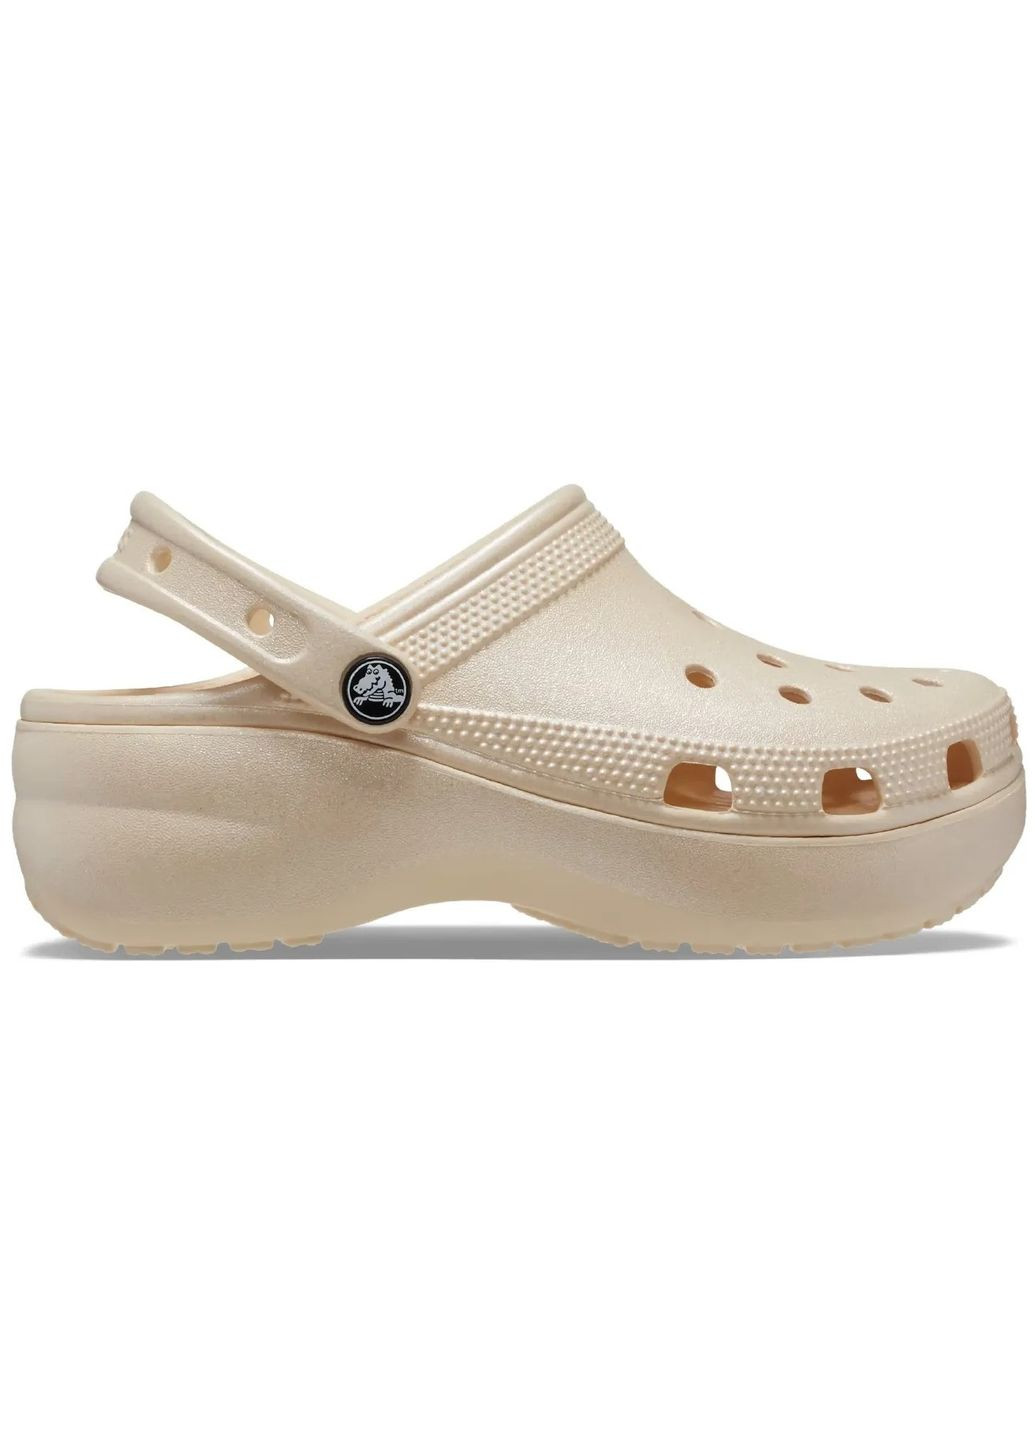 Бежевые женские кроксы classic platform clog vanilla m8w10--26.5 см 208590 Crocs